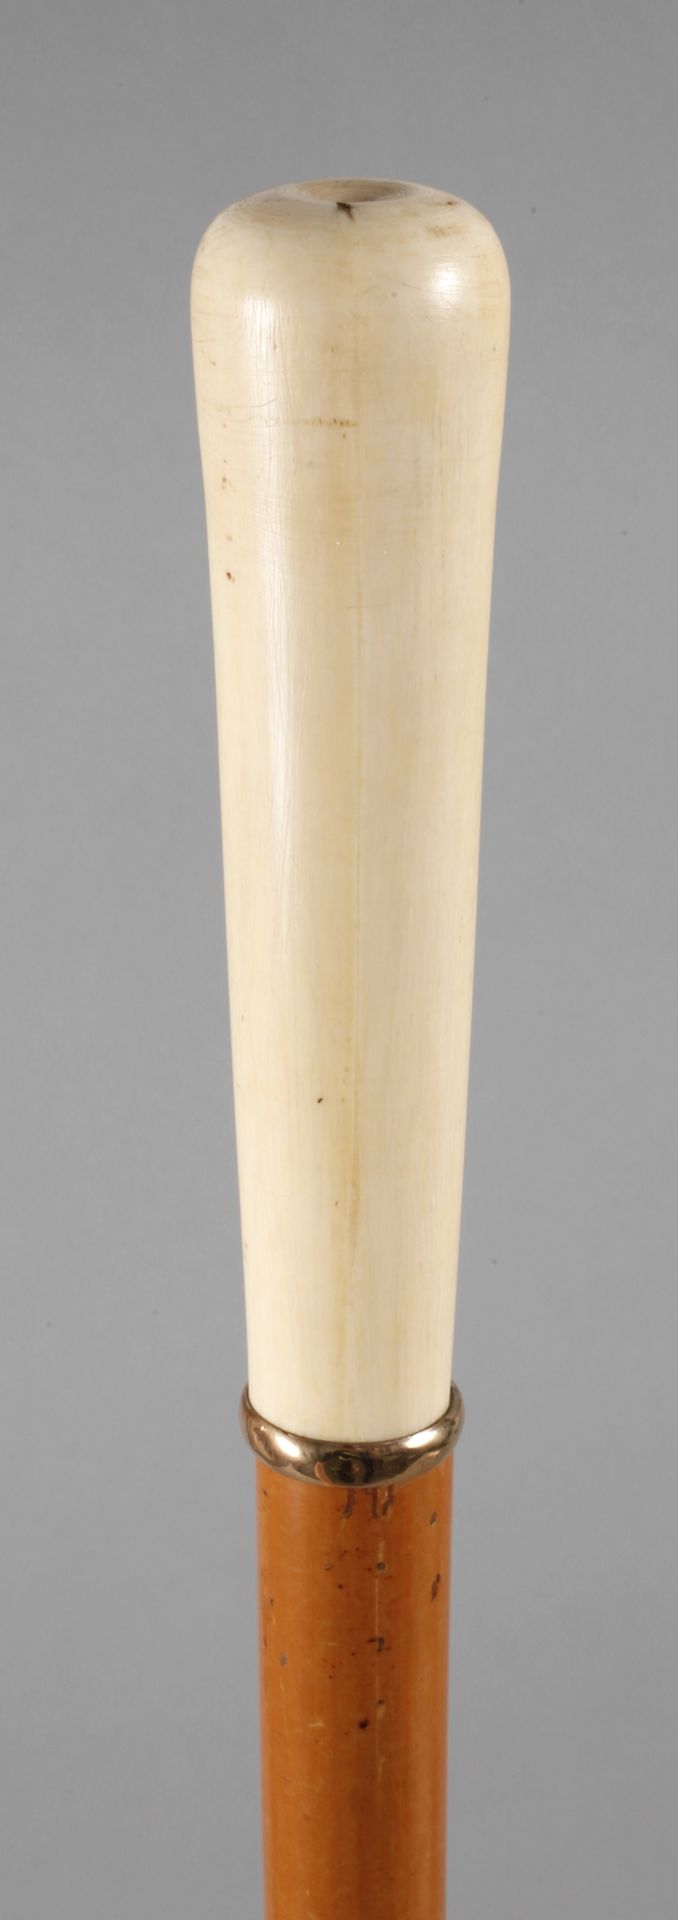 Spazierstock Elfenbein um 1890, hoher, konisch zulaufender Knauf aus Elfenbein, schmale,